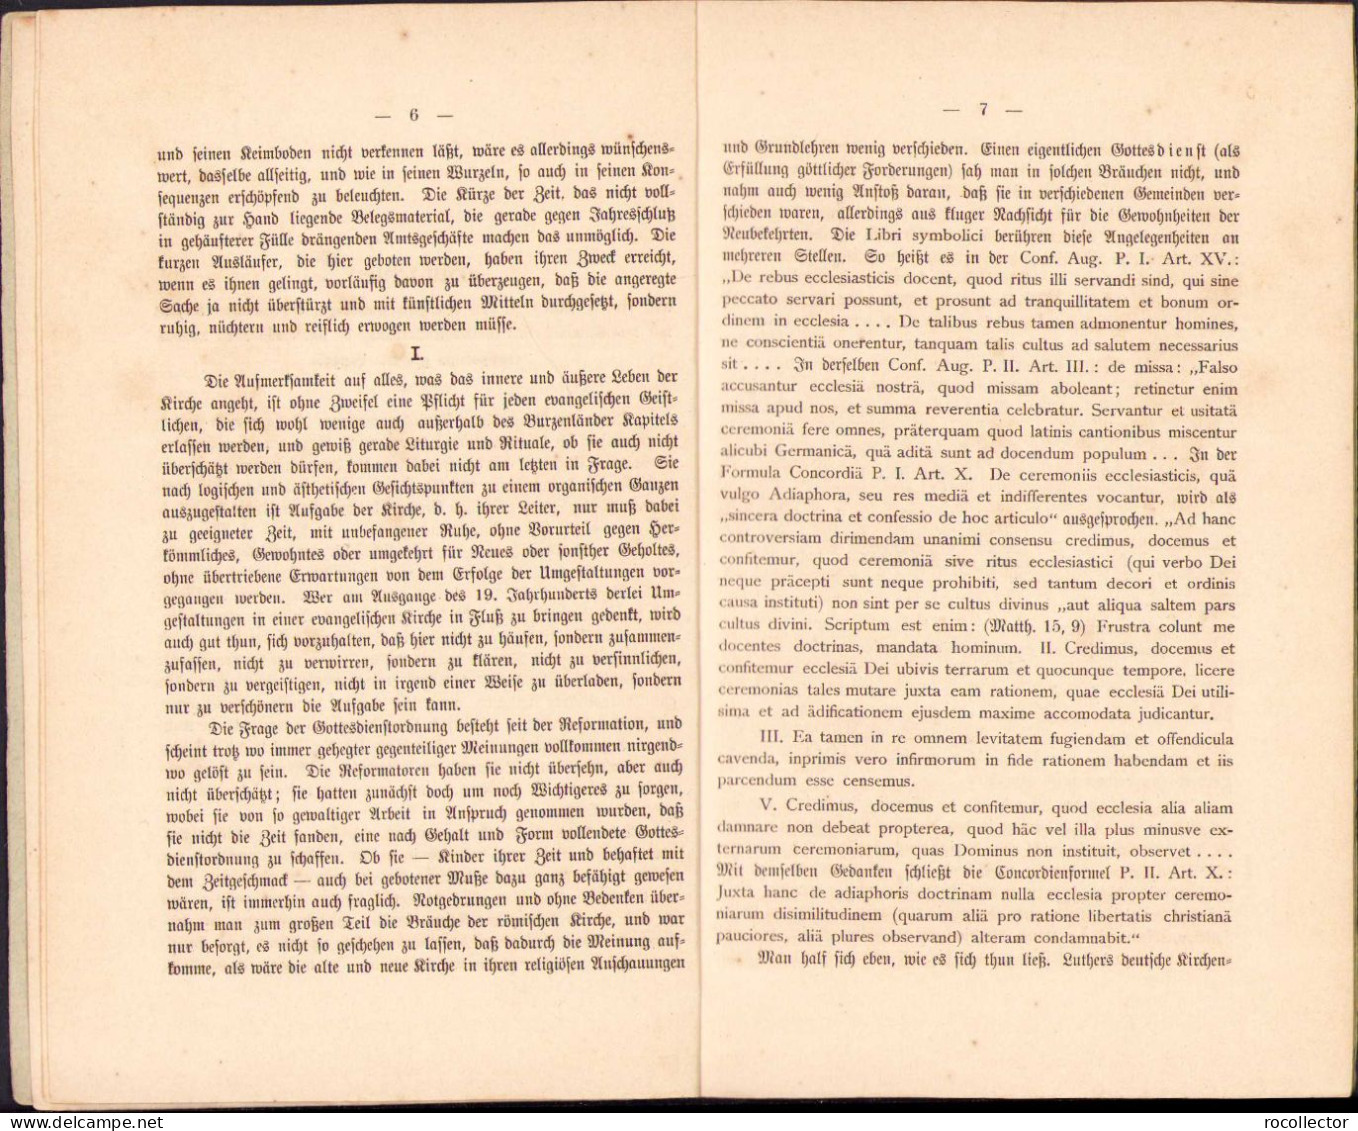 Gutachten Des Mühlbächer Bezirks-Consistoriums Und Des Unterwälder Kapitel, 1894 C574 - Livres Anciens